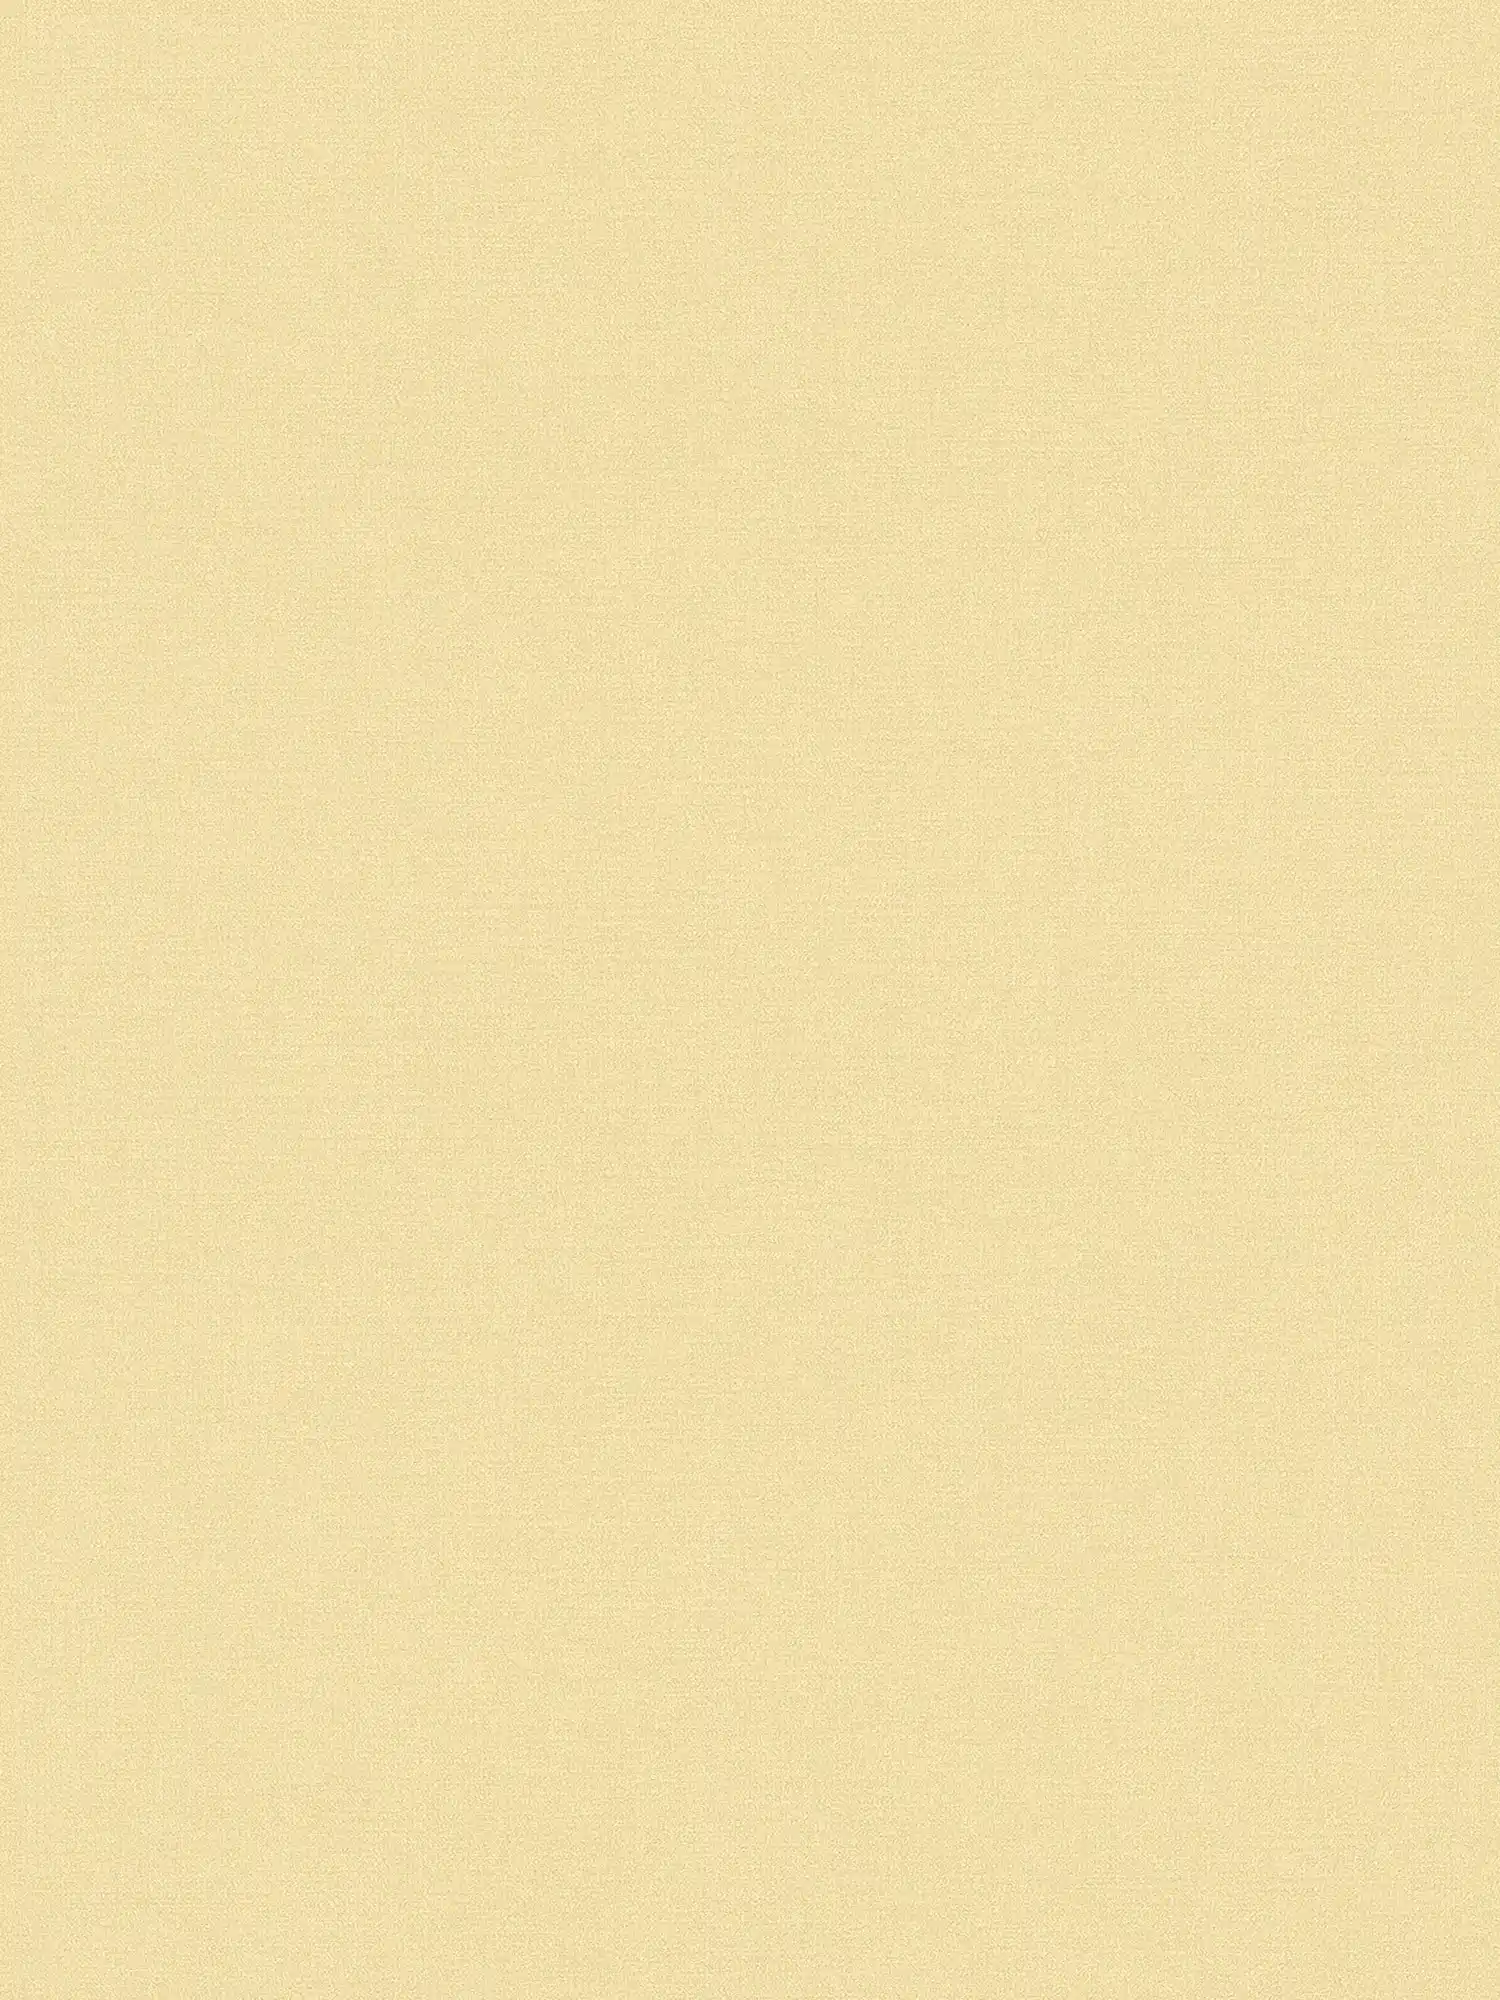 Carta da parati in tessuto non tessuto a tinta unita in una tonalità calda - giallo
